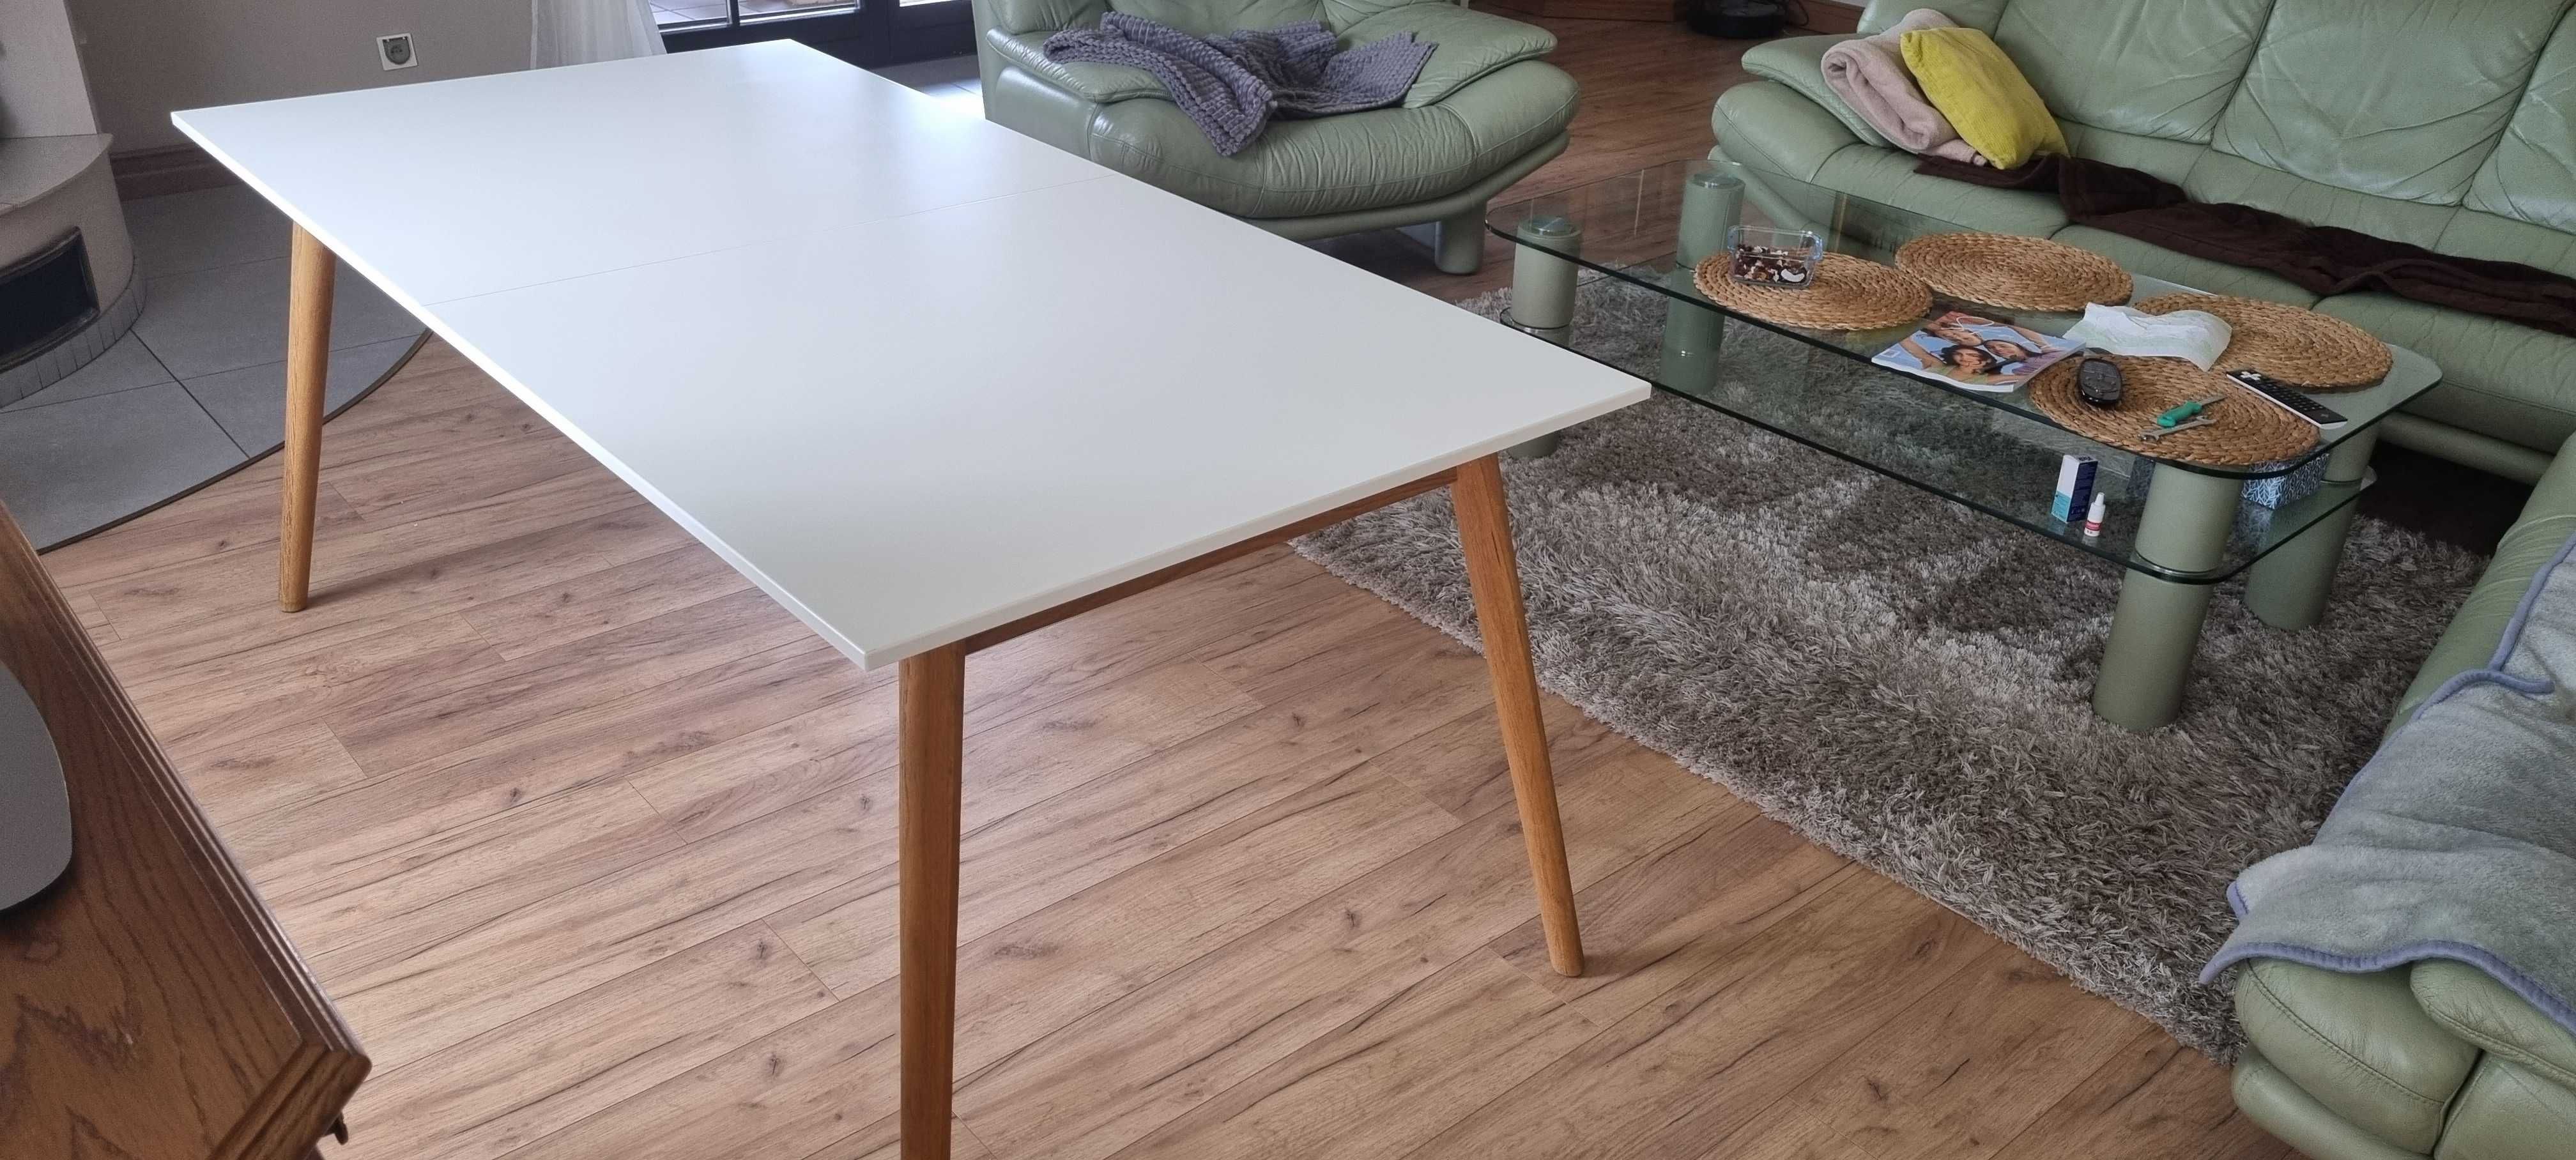 Stół rozkładany biały MDF, drewniany, styl nowoczesny, skandynawski.